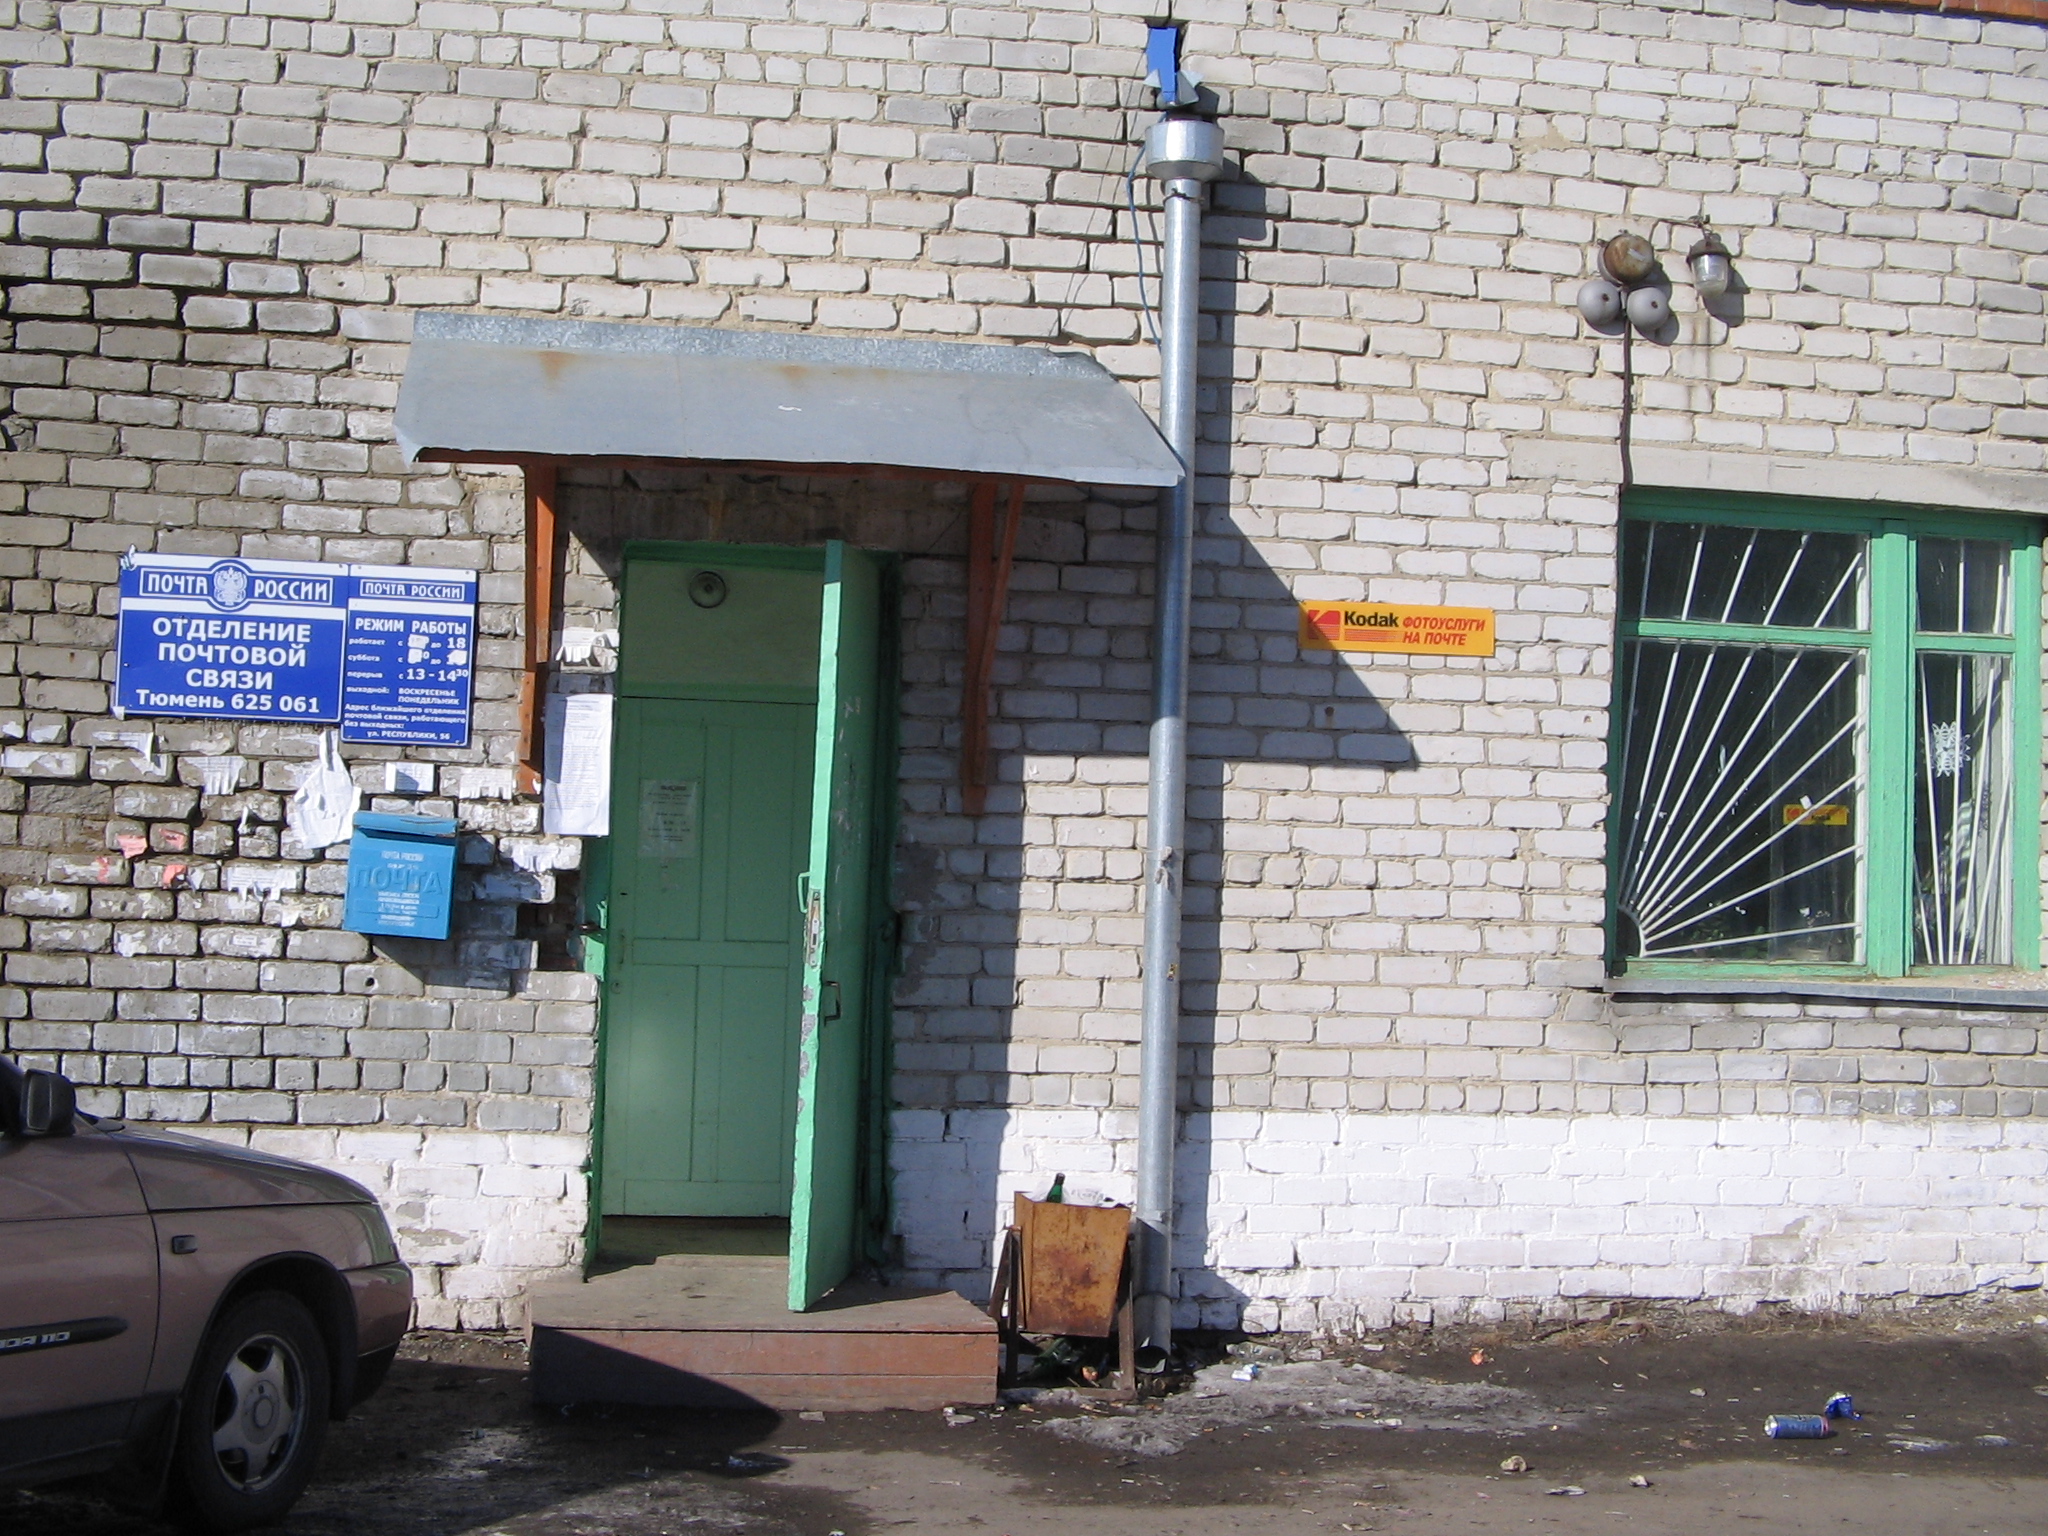 ВХОД, отделение почтовой связи 625061, Тюменская обл., Тюмень